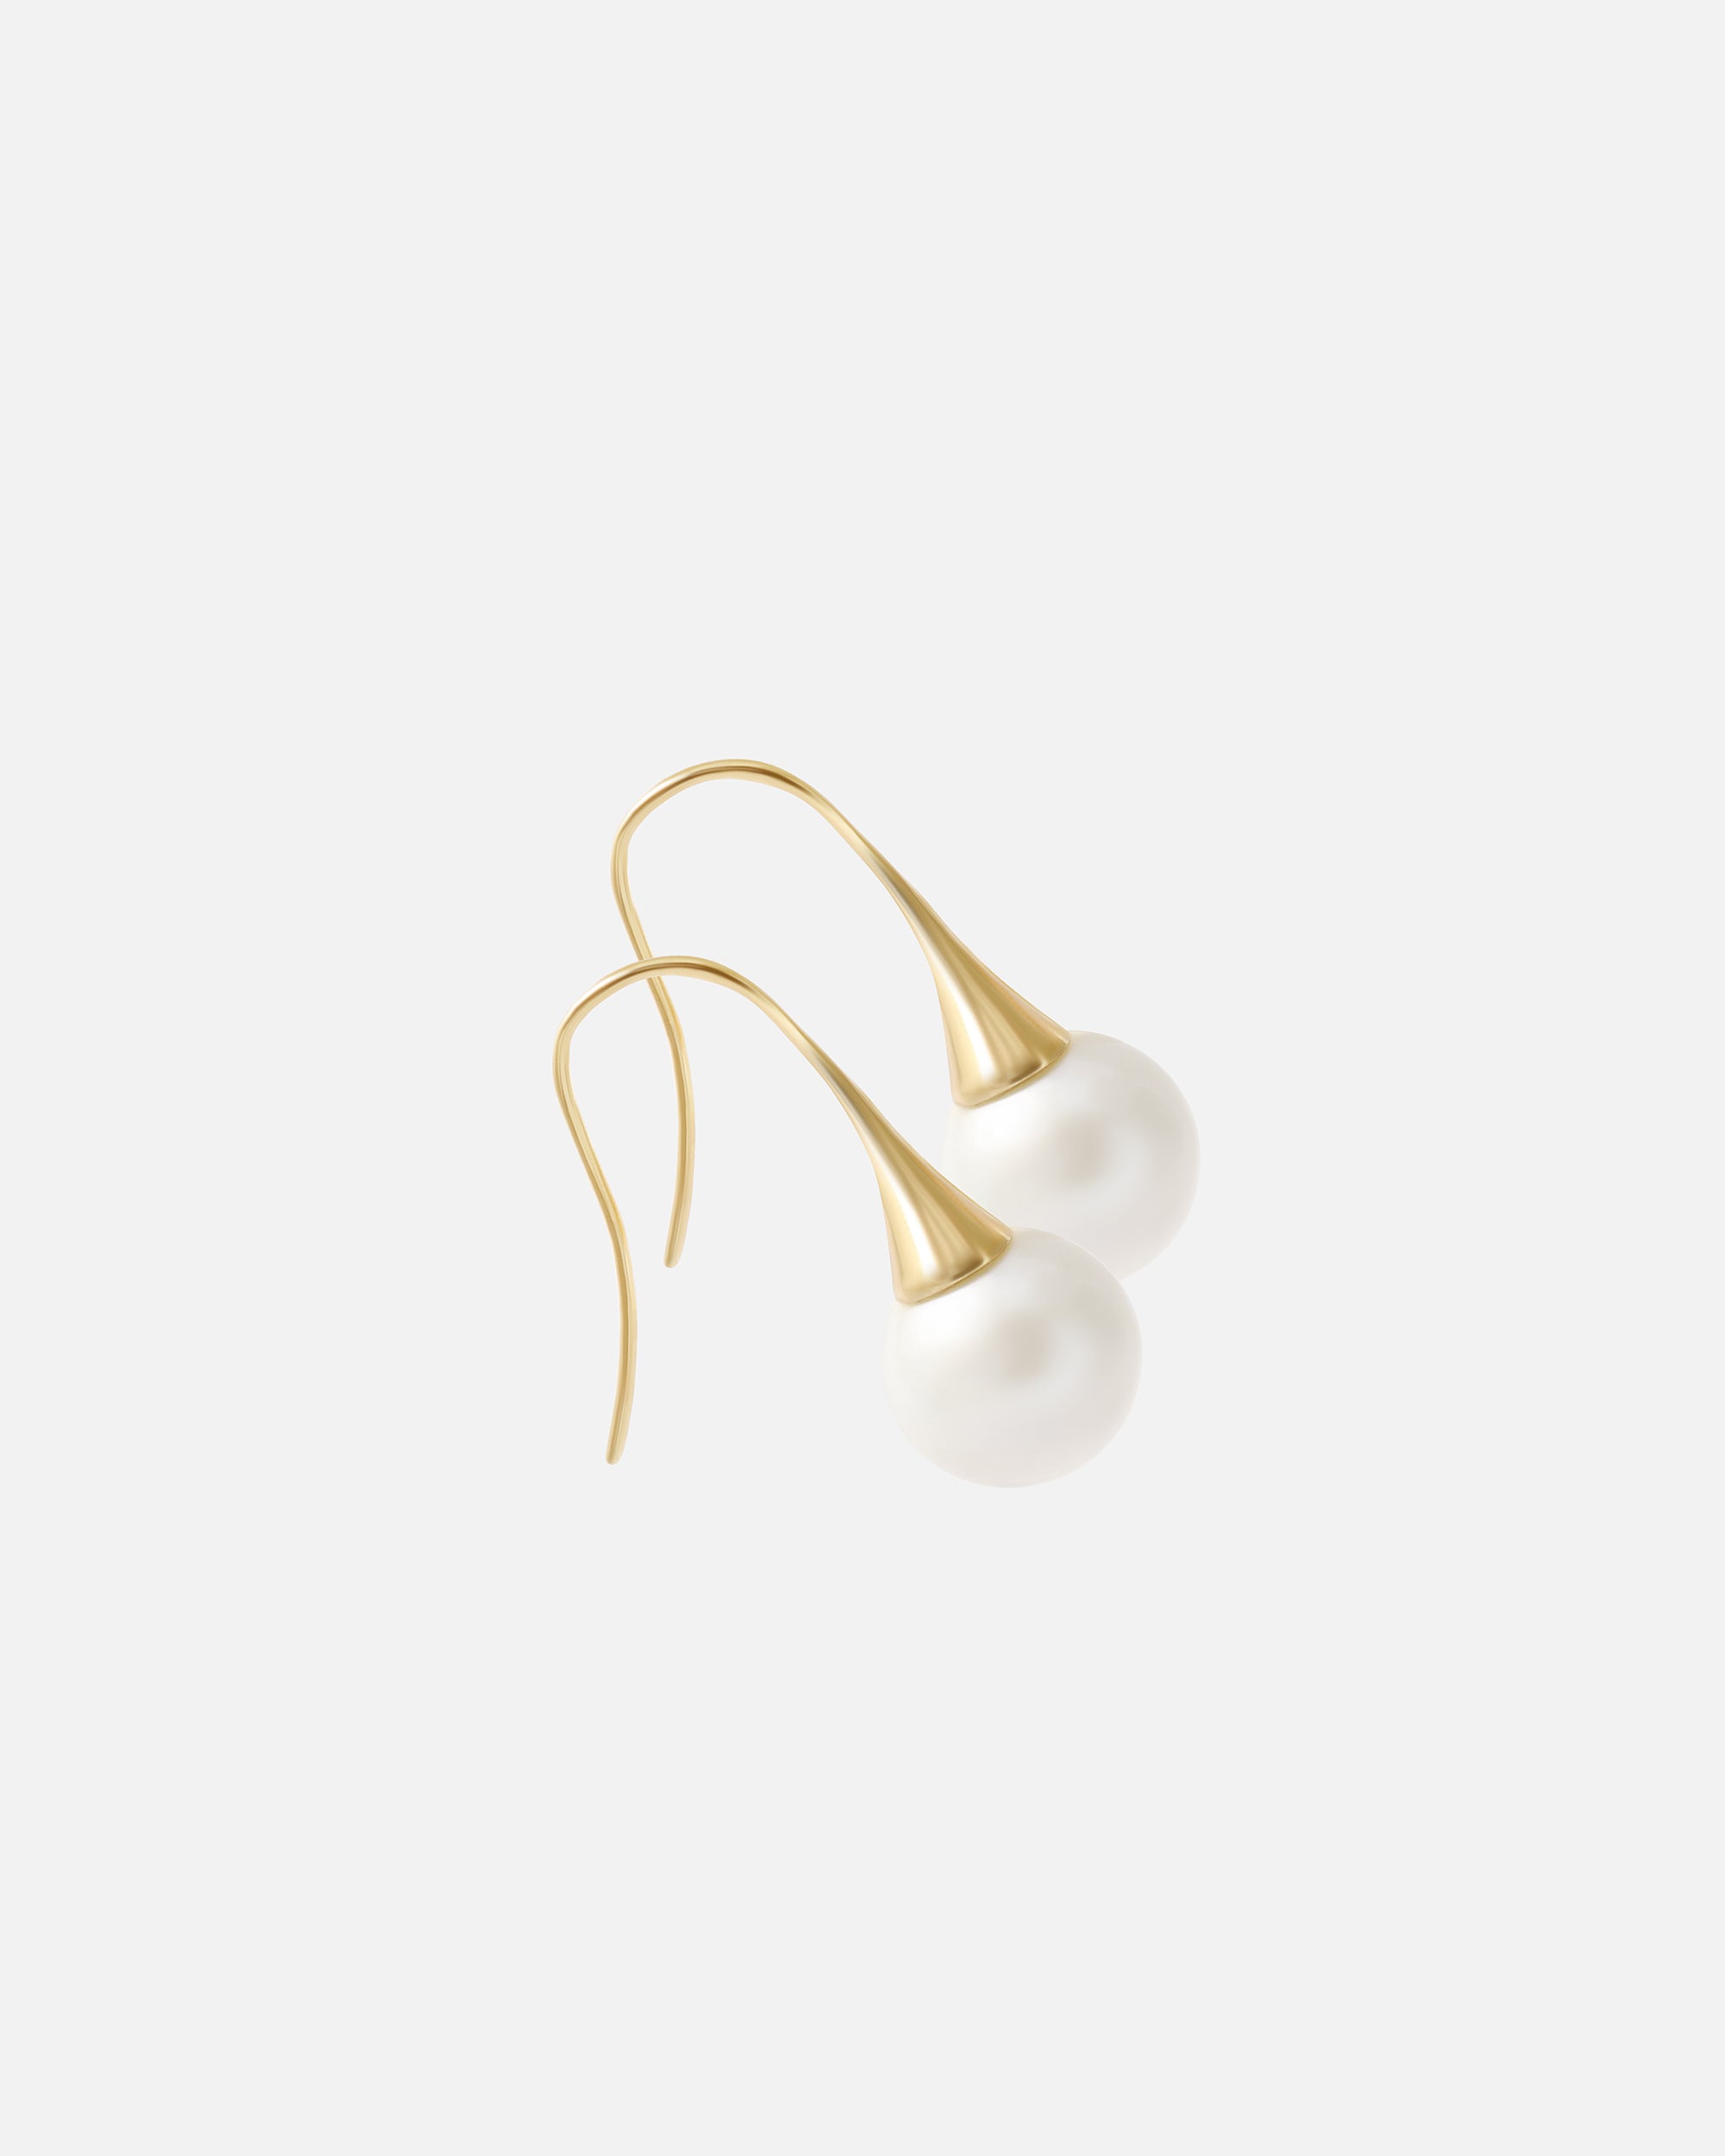 WeiWave / Solo Round Pearl Earrings By Ruowei in earrings Category